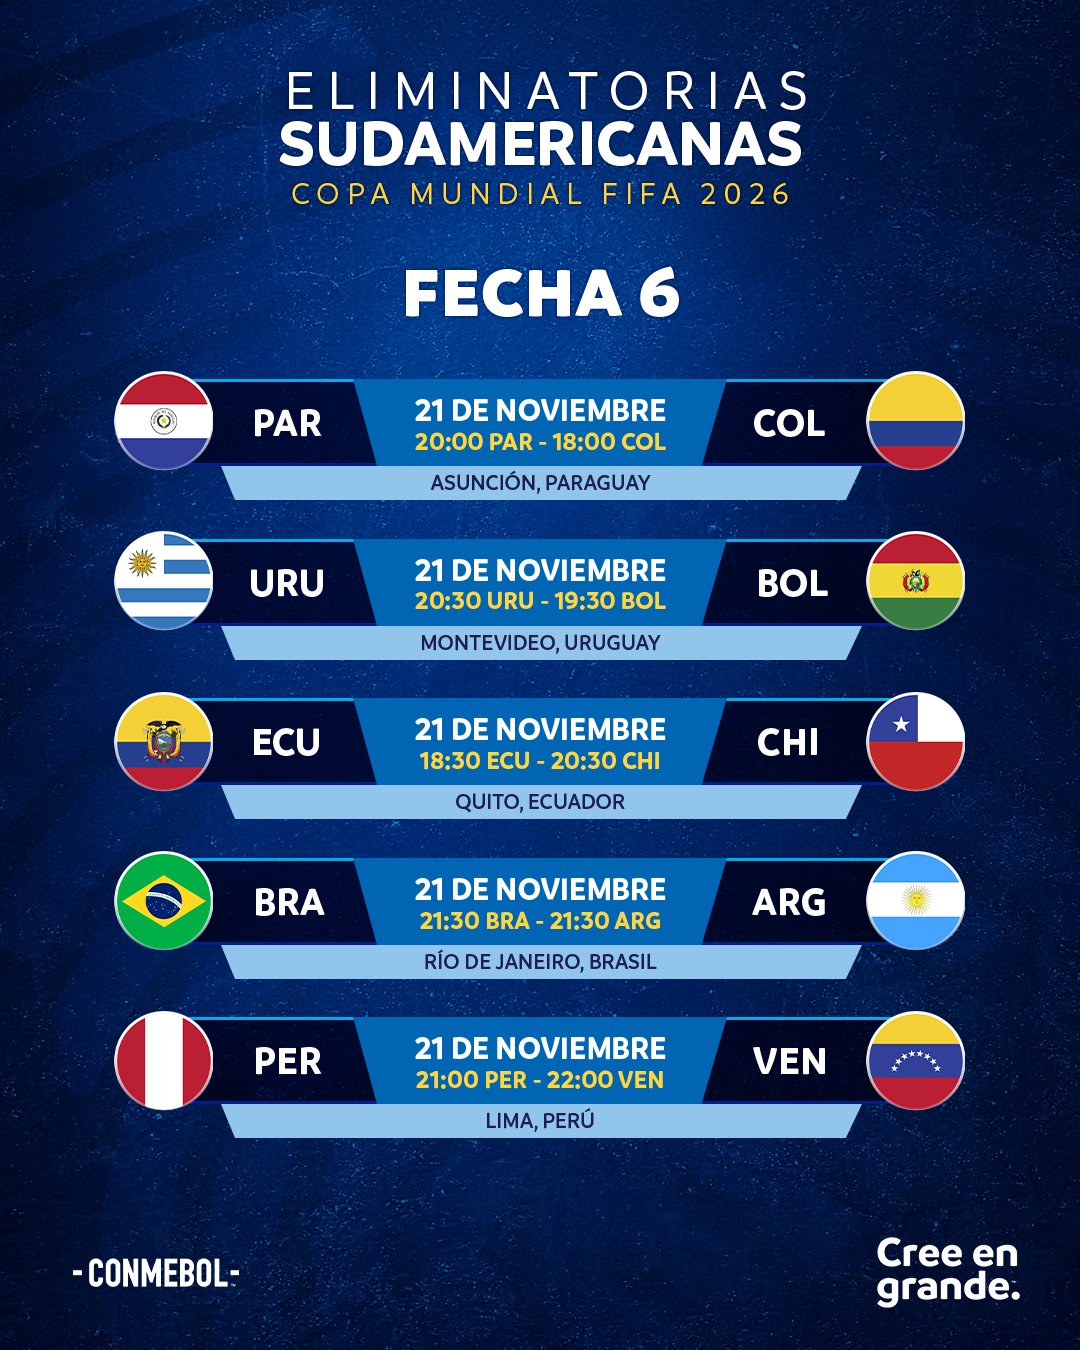 Martes a puro fútbol con la disputa de la sexta fecha de Eliminatorias Sudamericanas | Canal Showsport